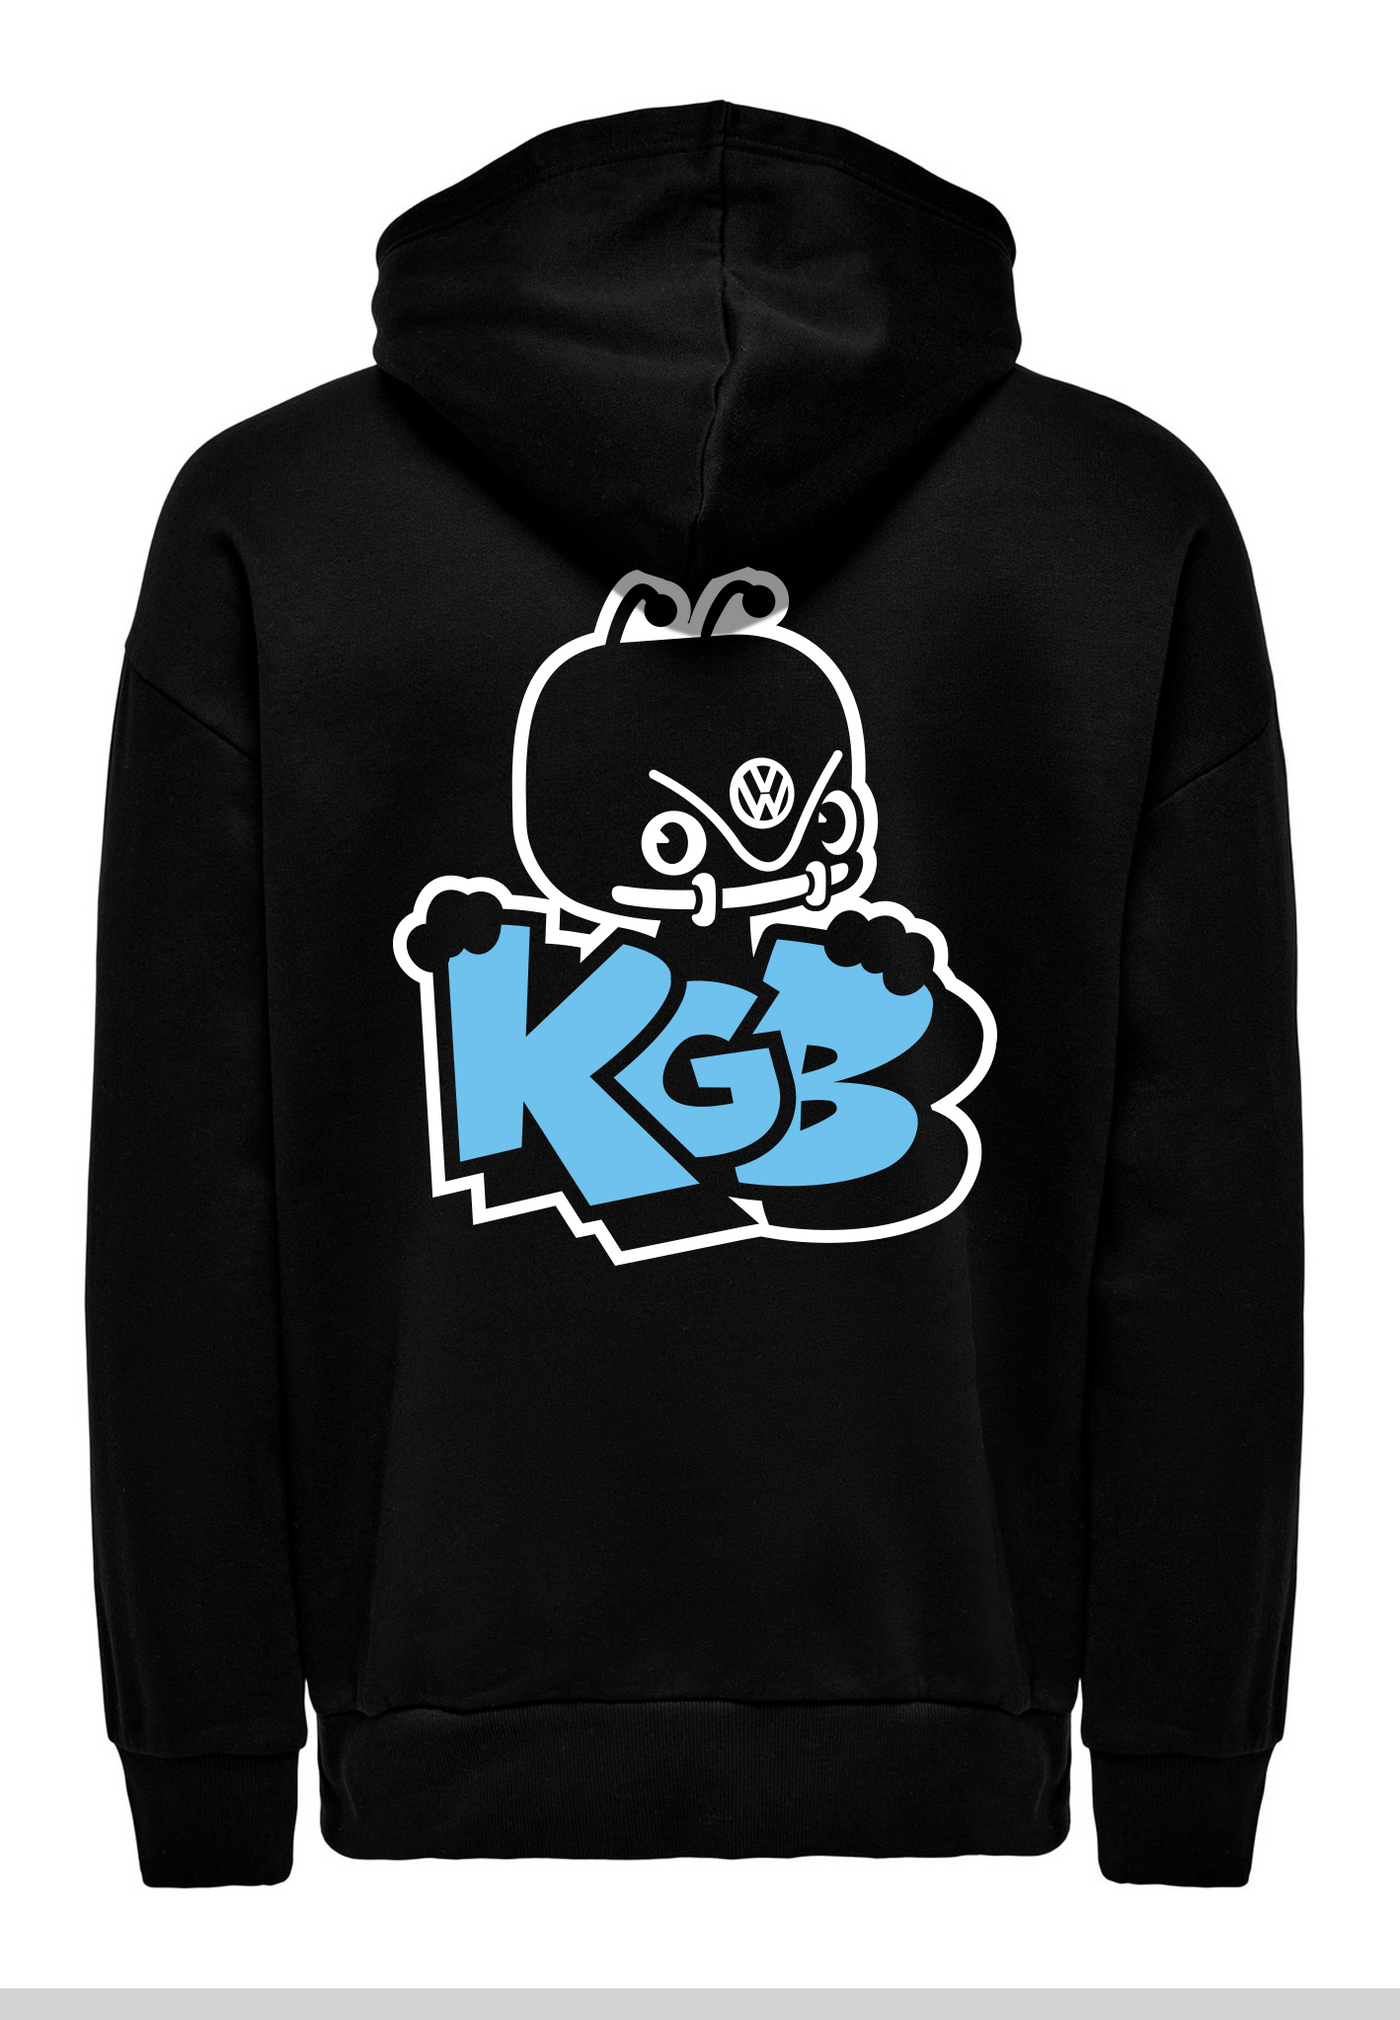 KGB Hoodie - blå logo (med ryg logo)